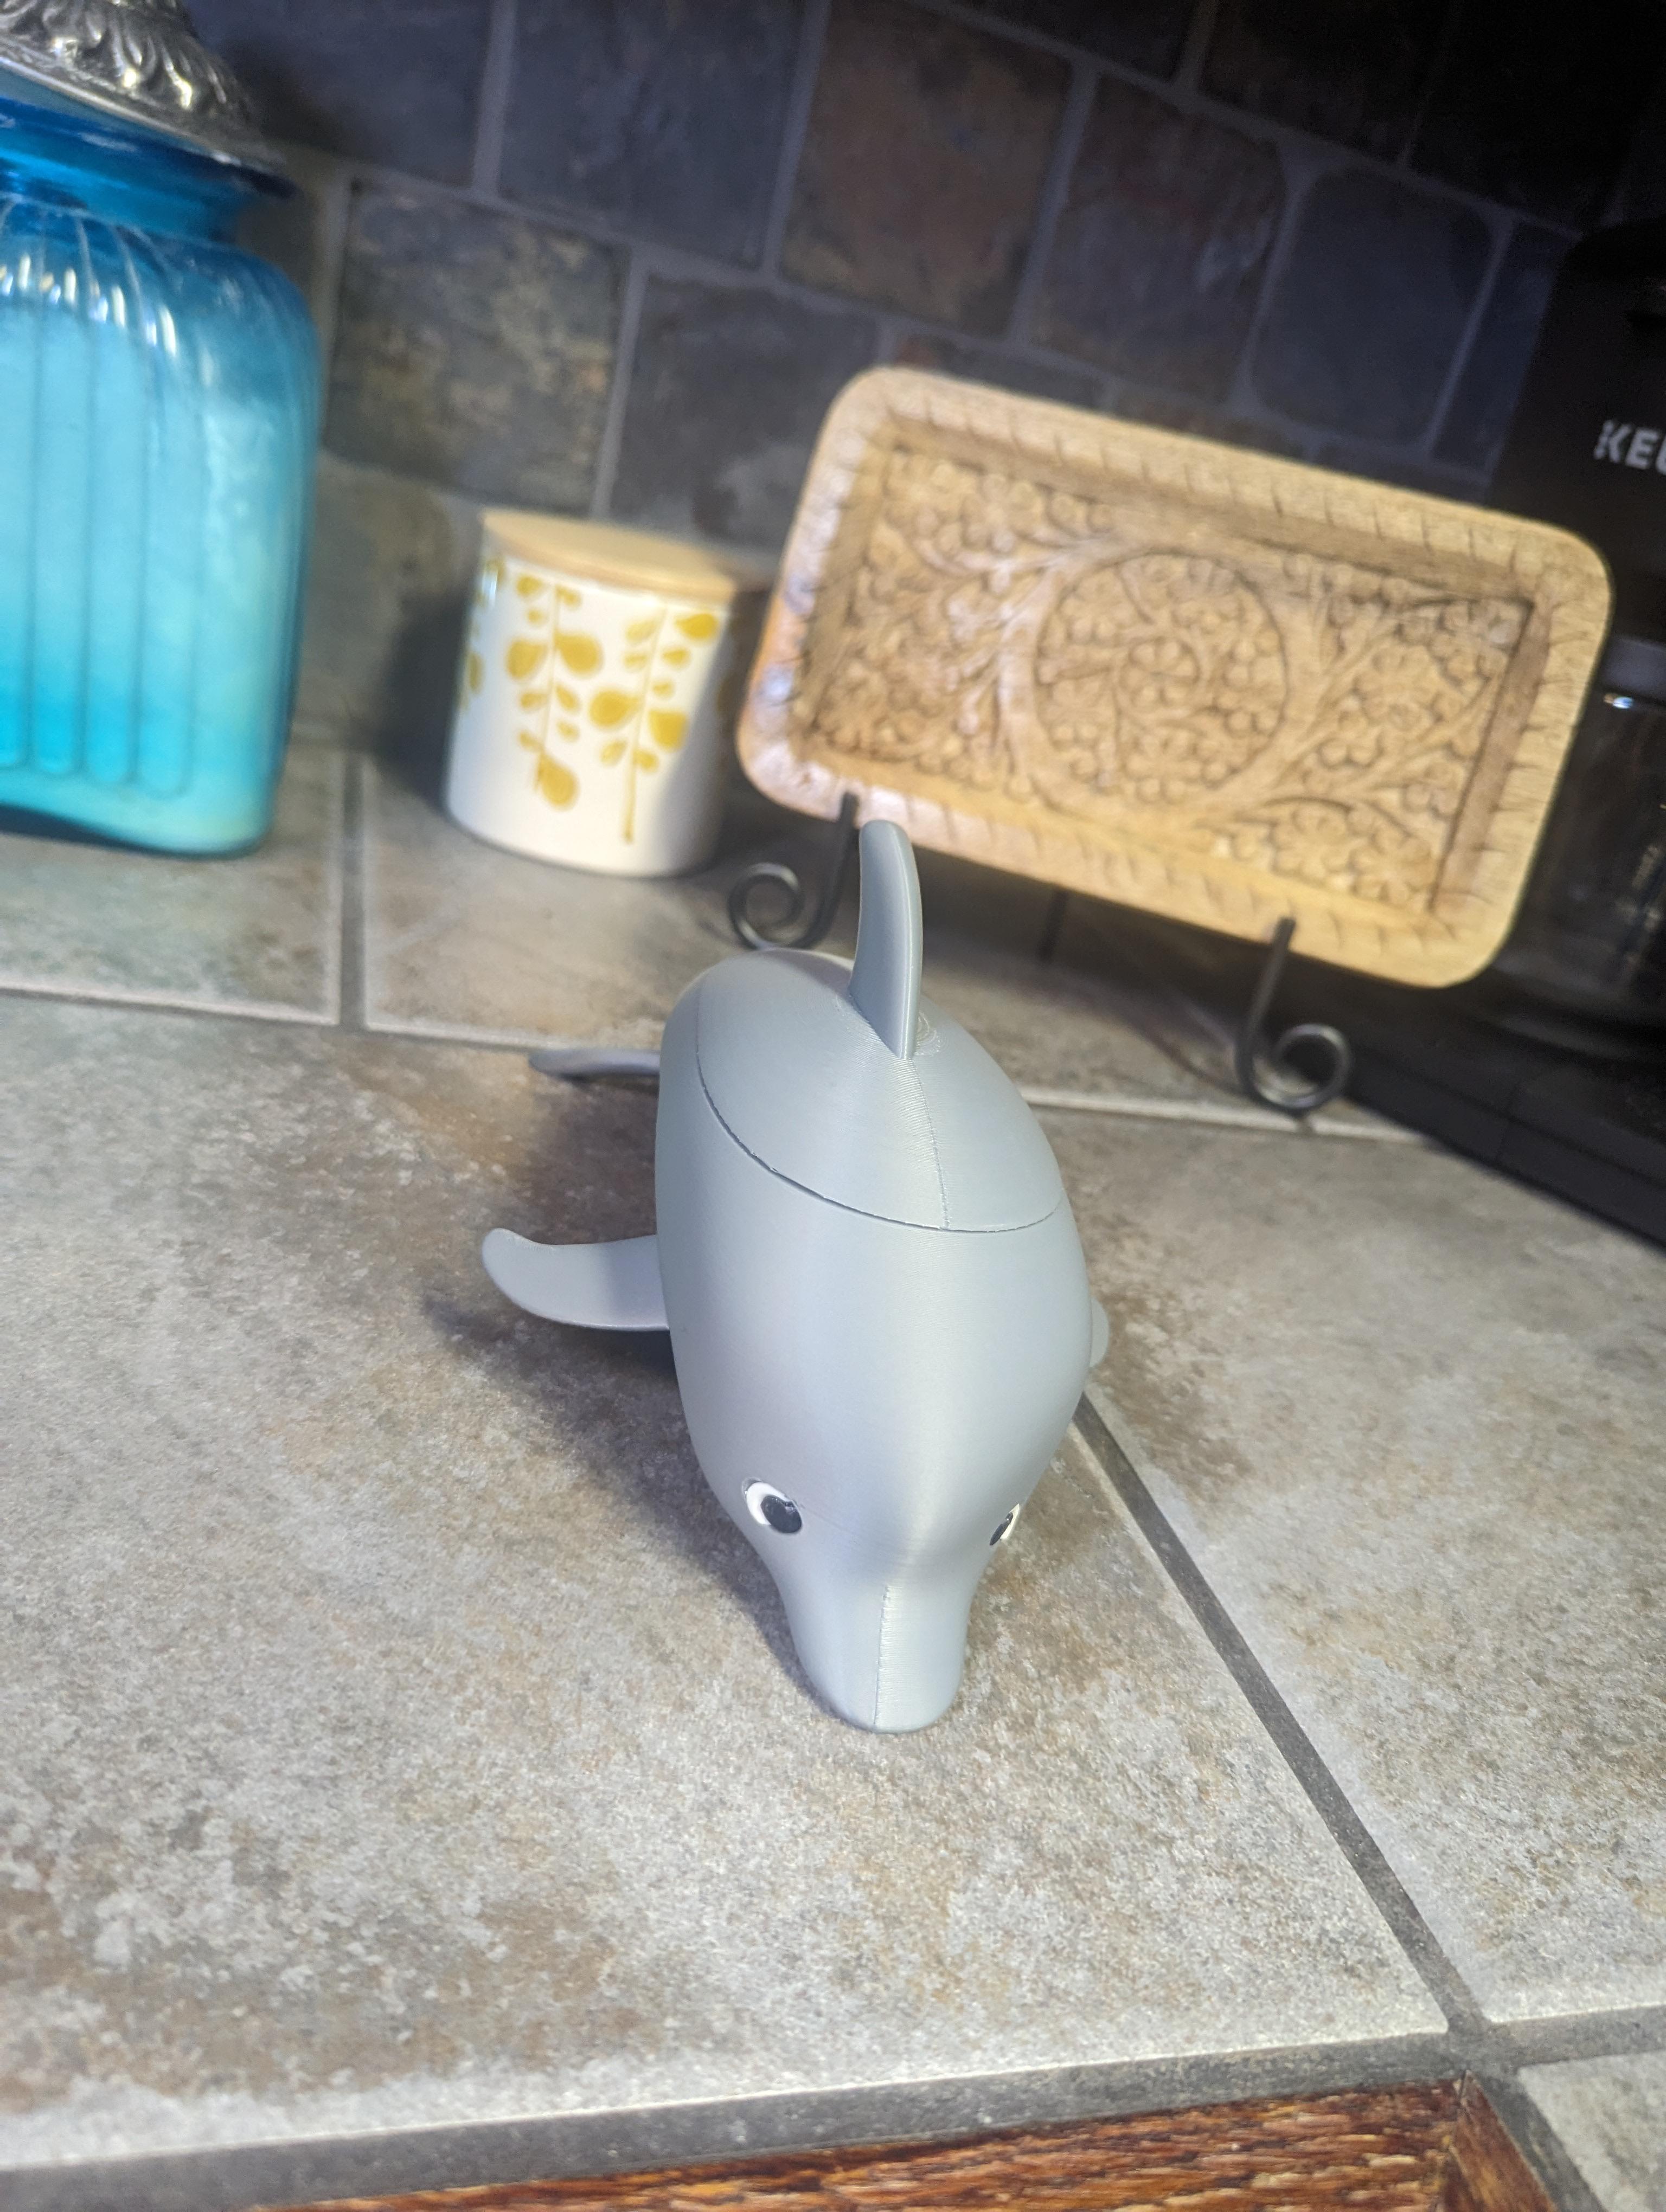 Desk Dolphin 3d model